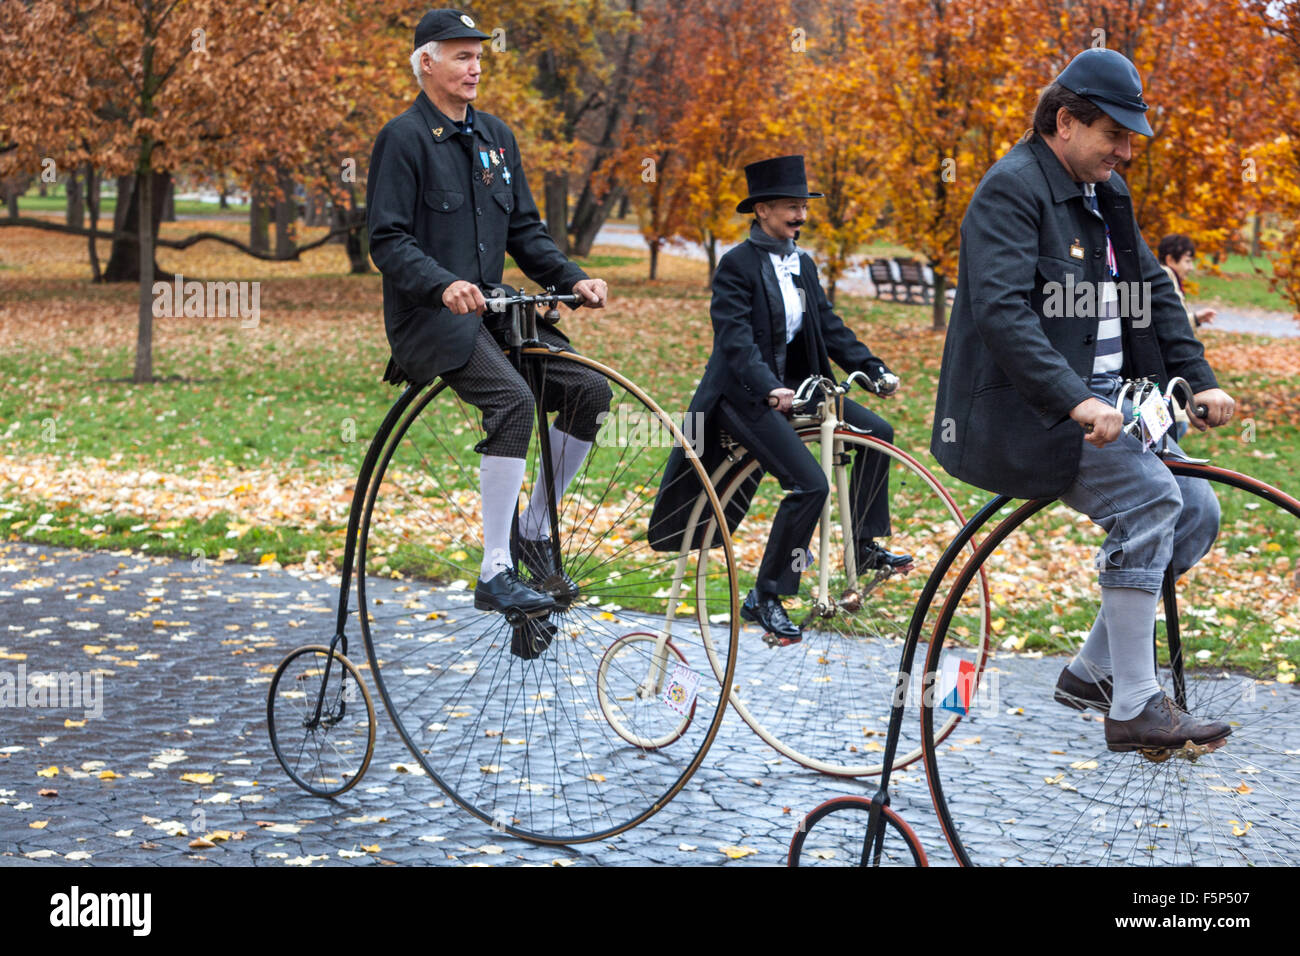 Les gens dans une course de vélo traditionnelle Penny Farthing. Les participants vêtus de costumes d'époque, Prague Letna Park automne République tchèque Banque D'Images